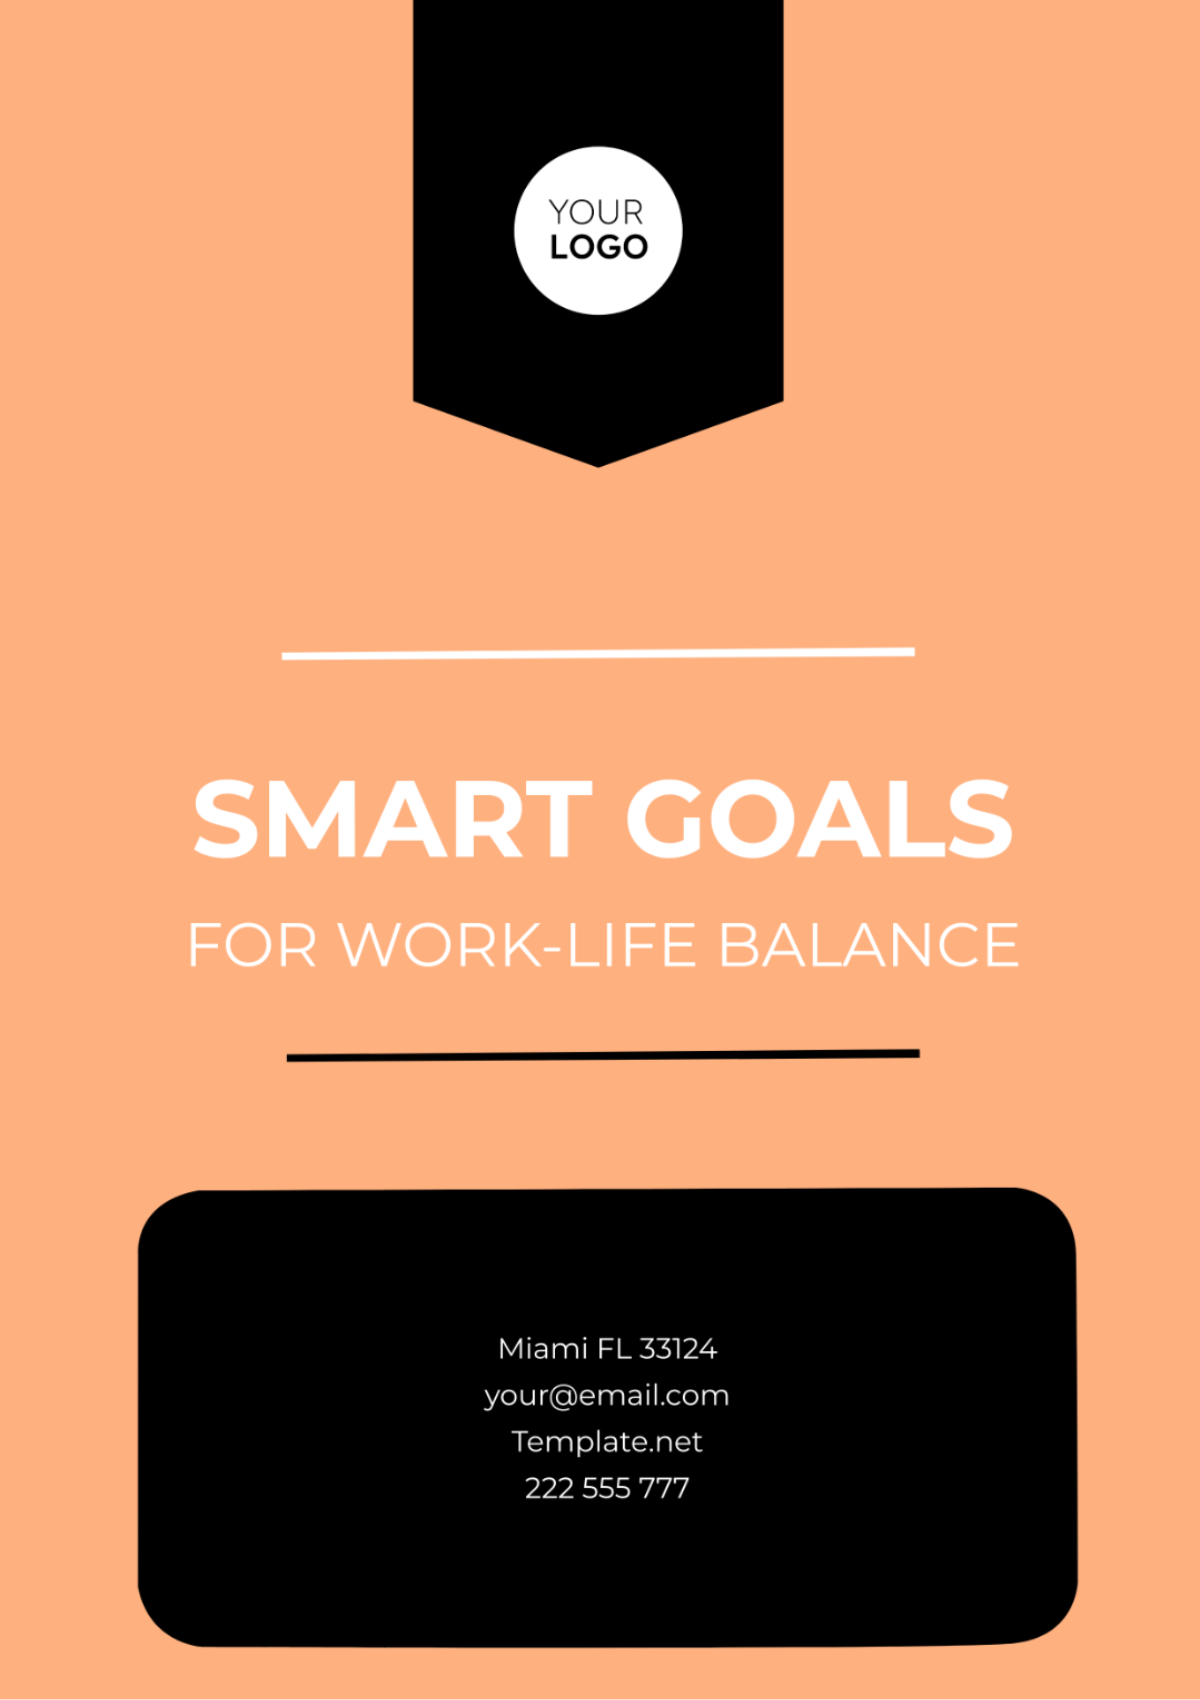 SMART Goals Template for Work-Life Balance